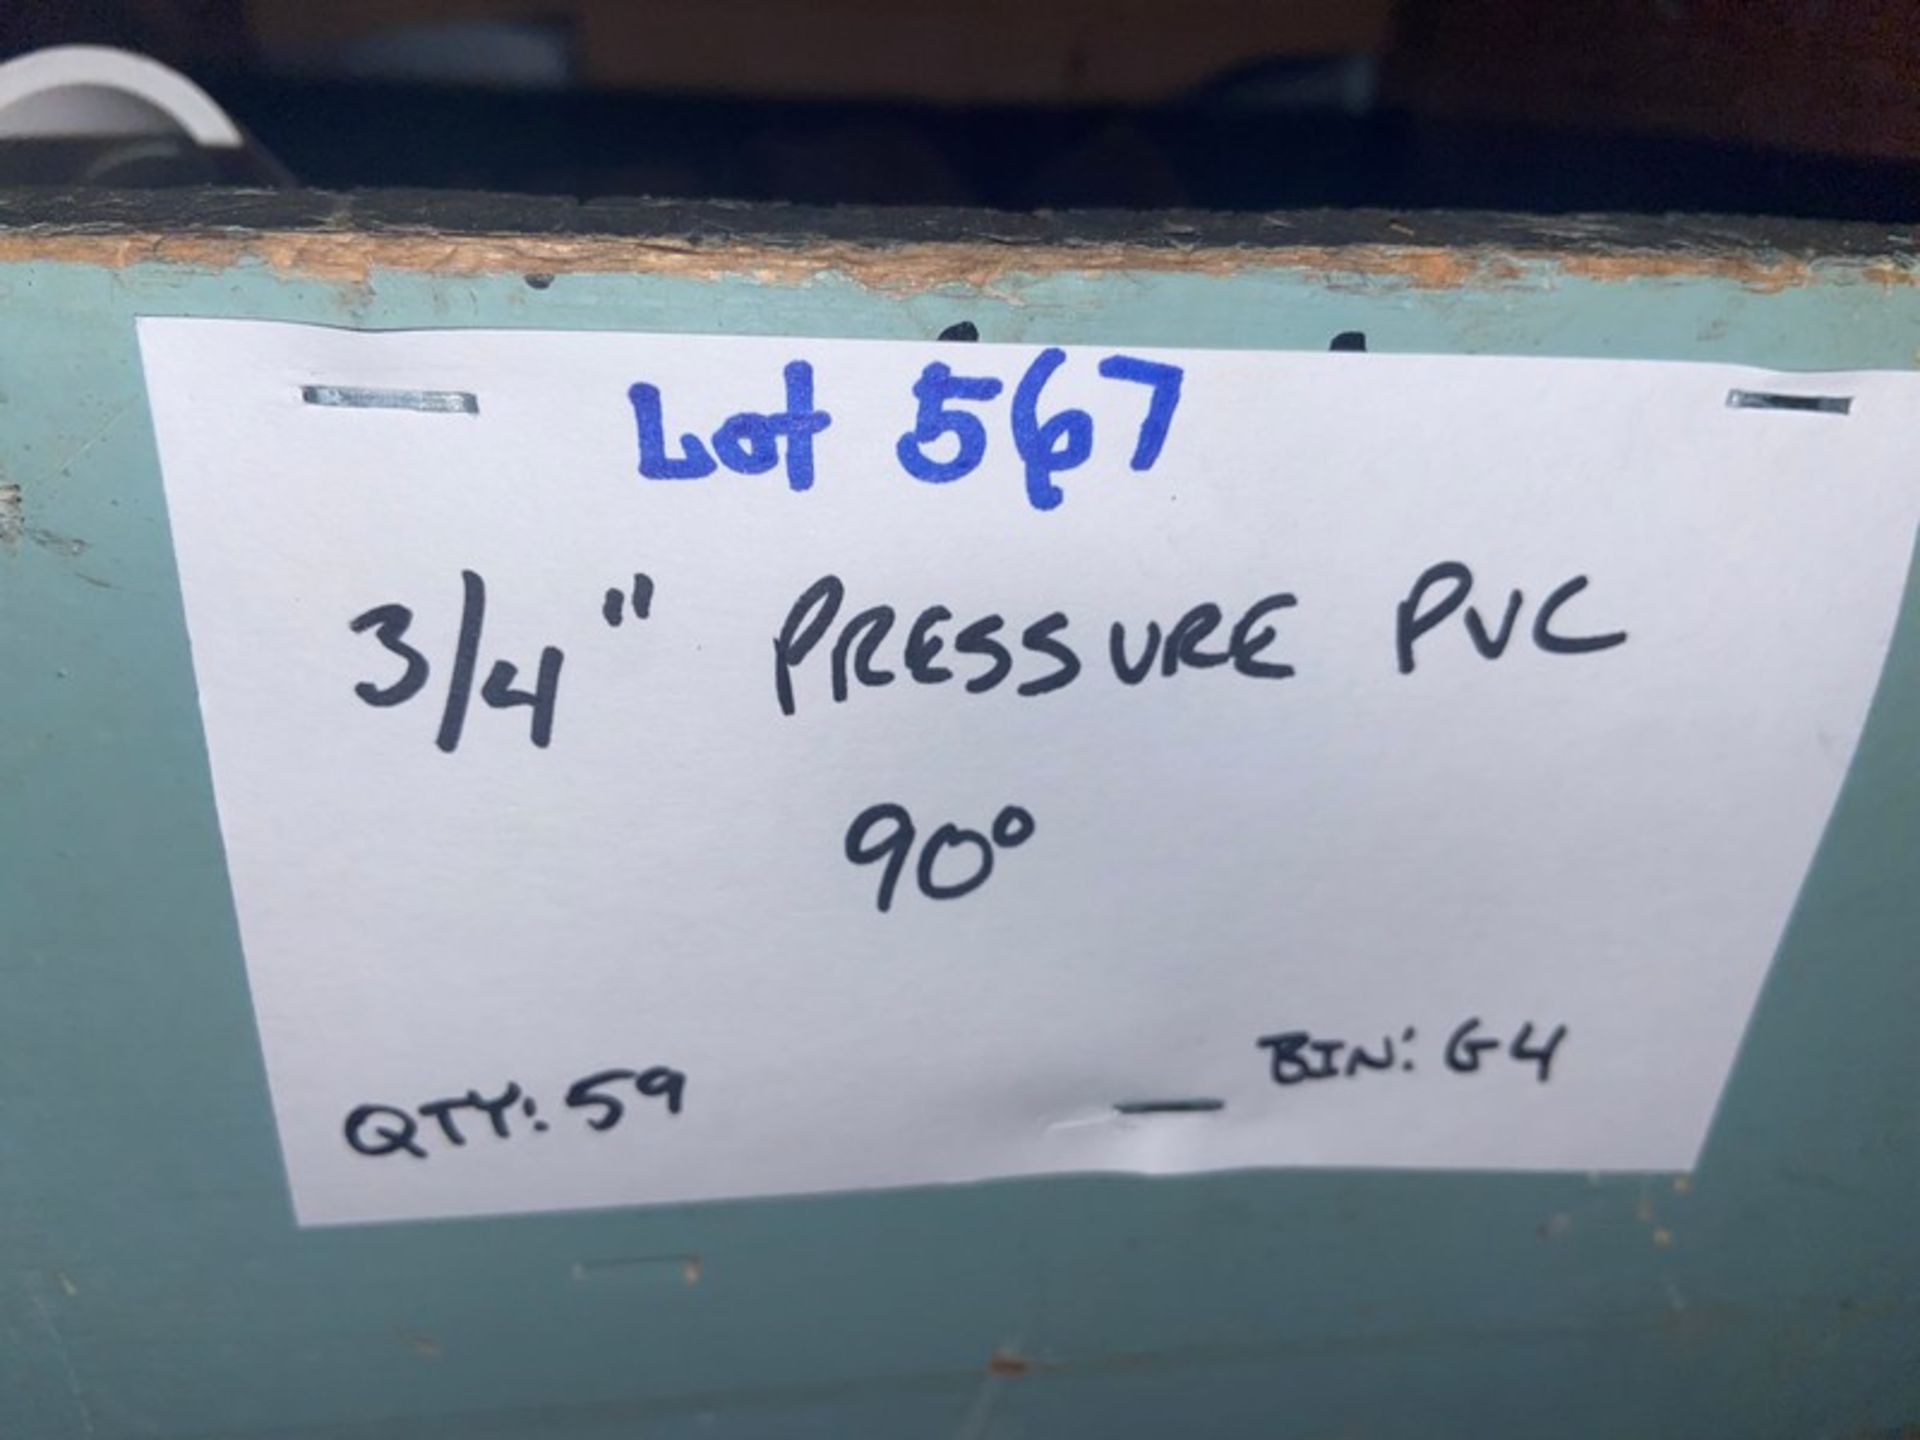 (59) 3/4 Pressure PVC 90’ (Bin:G4) (LOCATED IN MONROEVILLE, PA) - Bild 6 aus 6